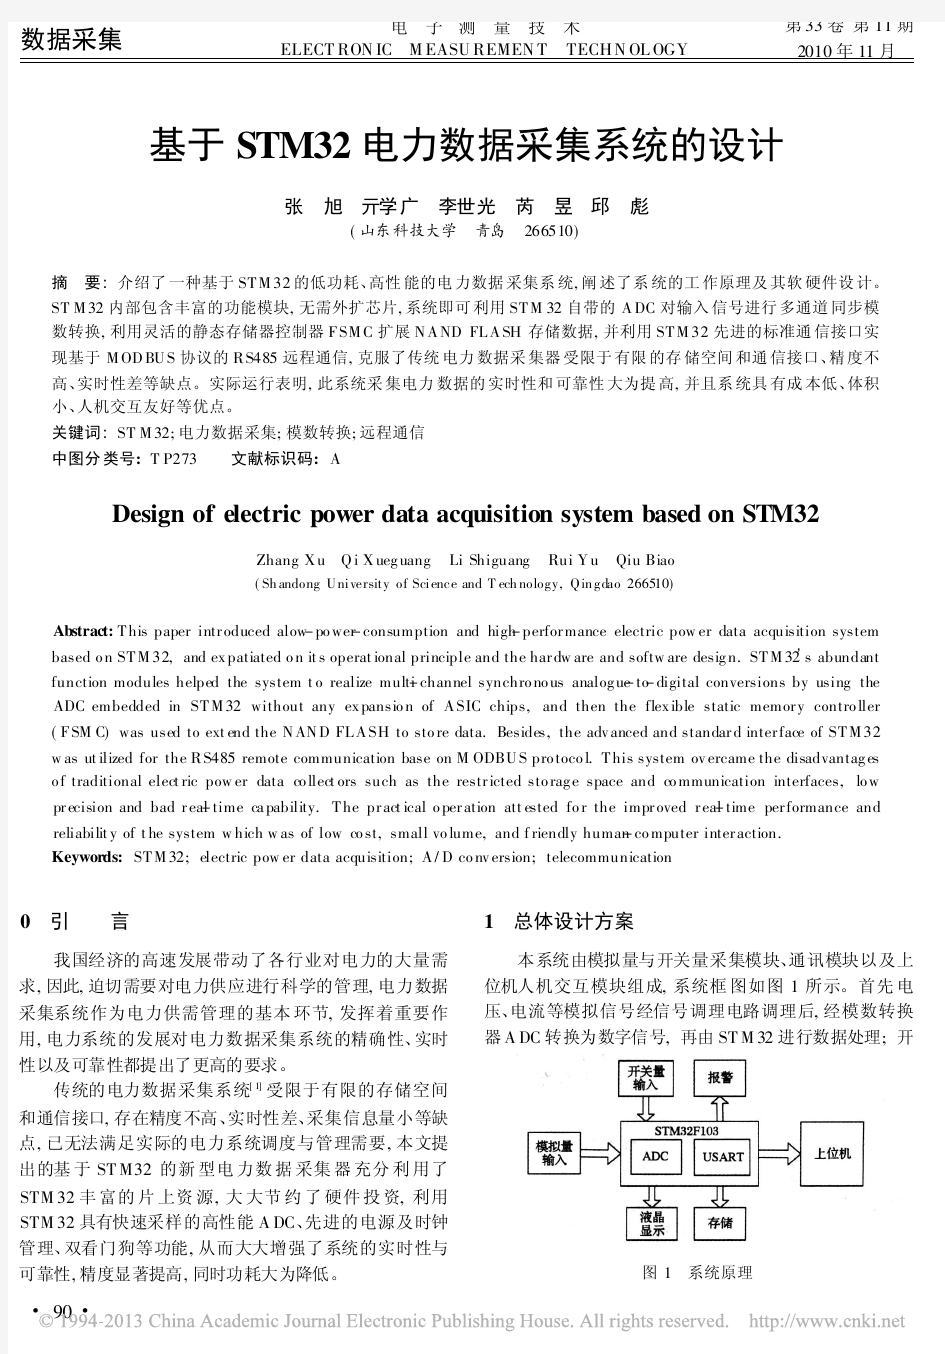 基于STM32电力数据采集系统的设计_张旭